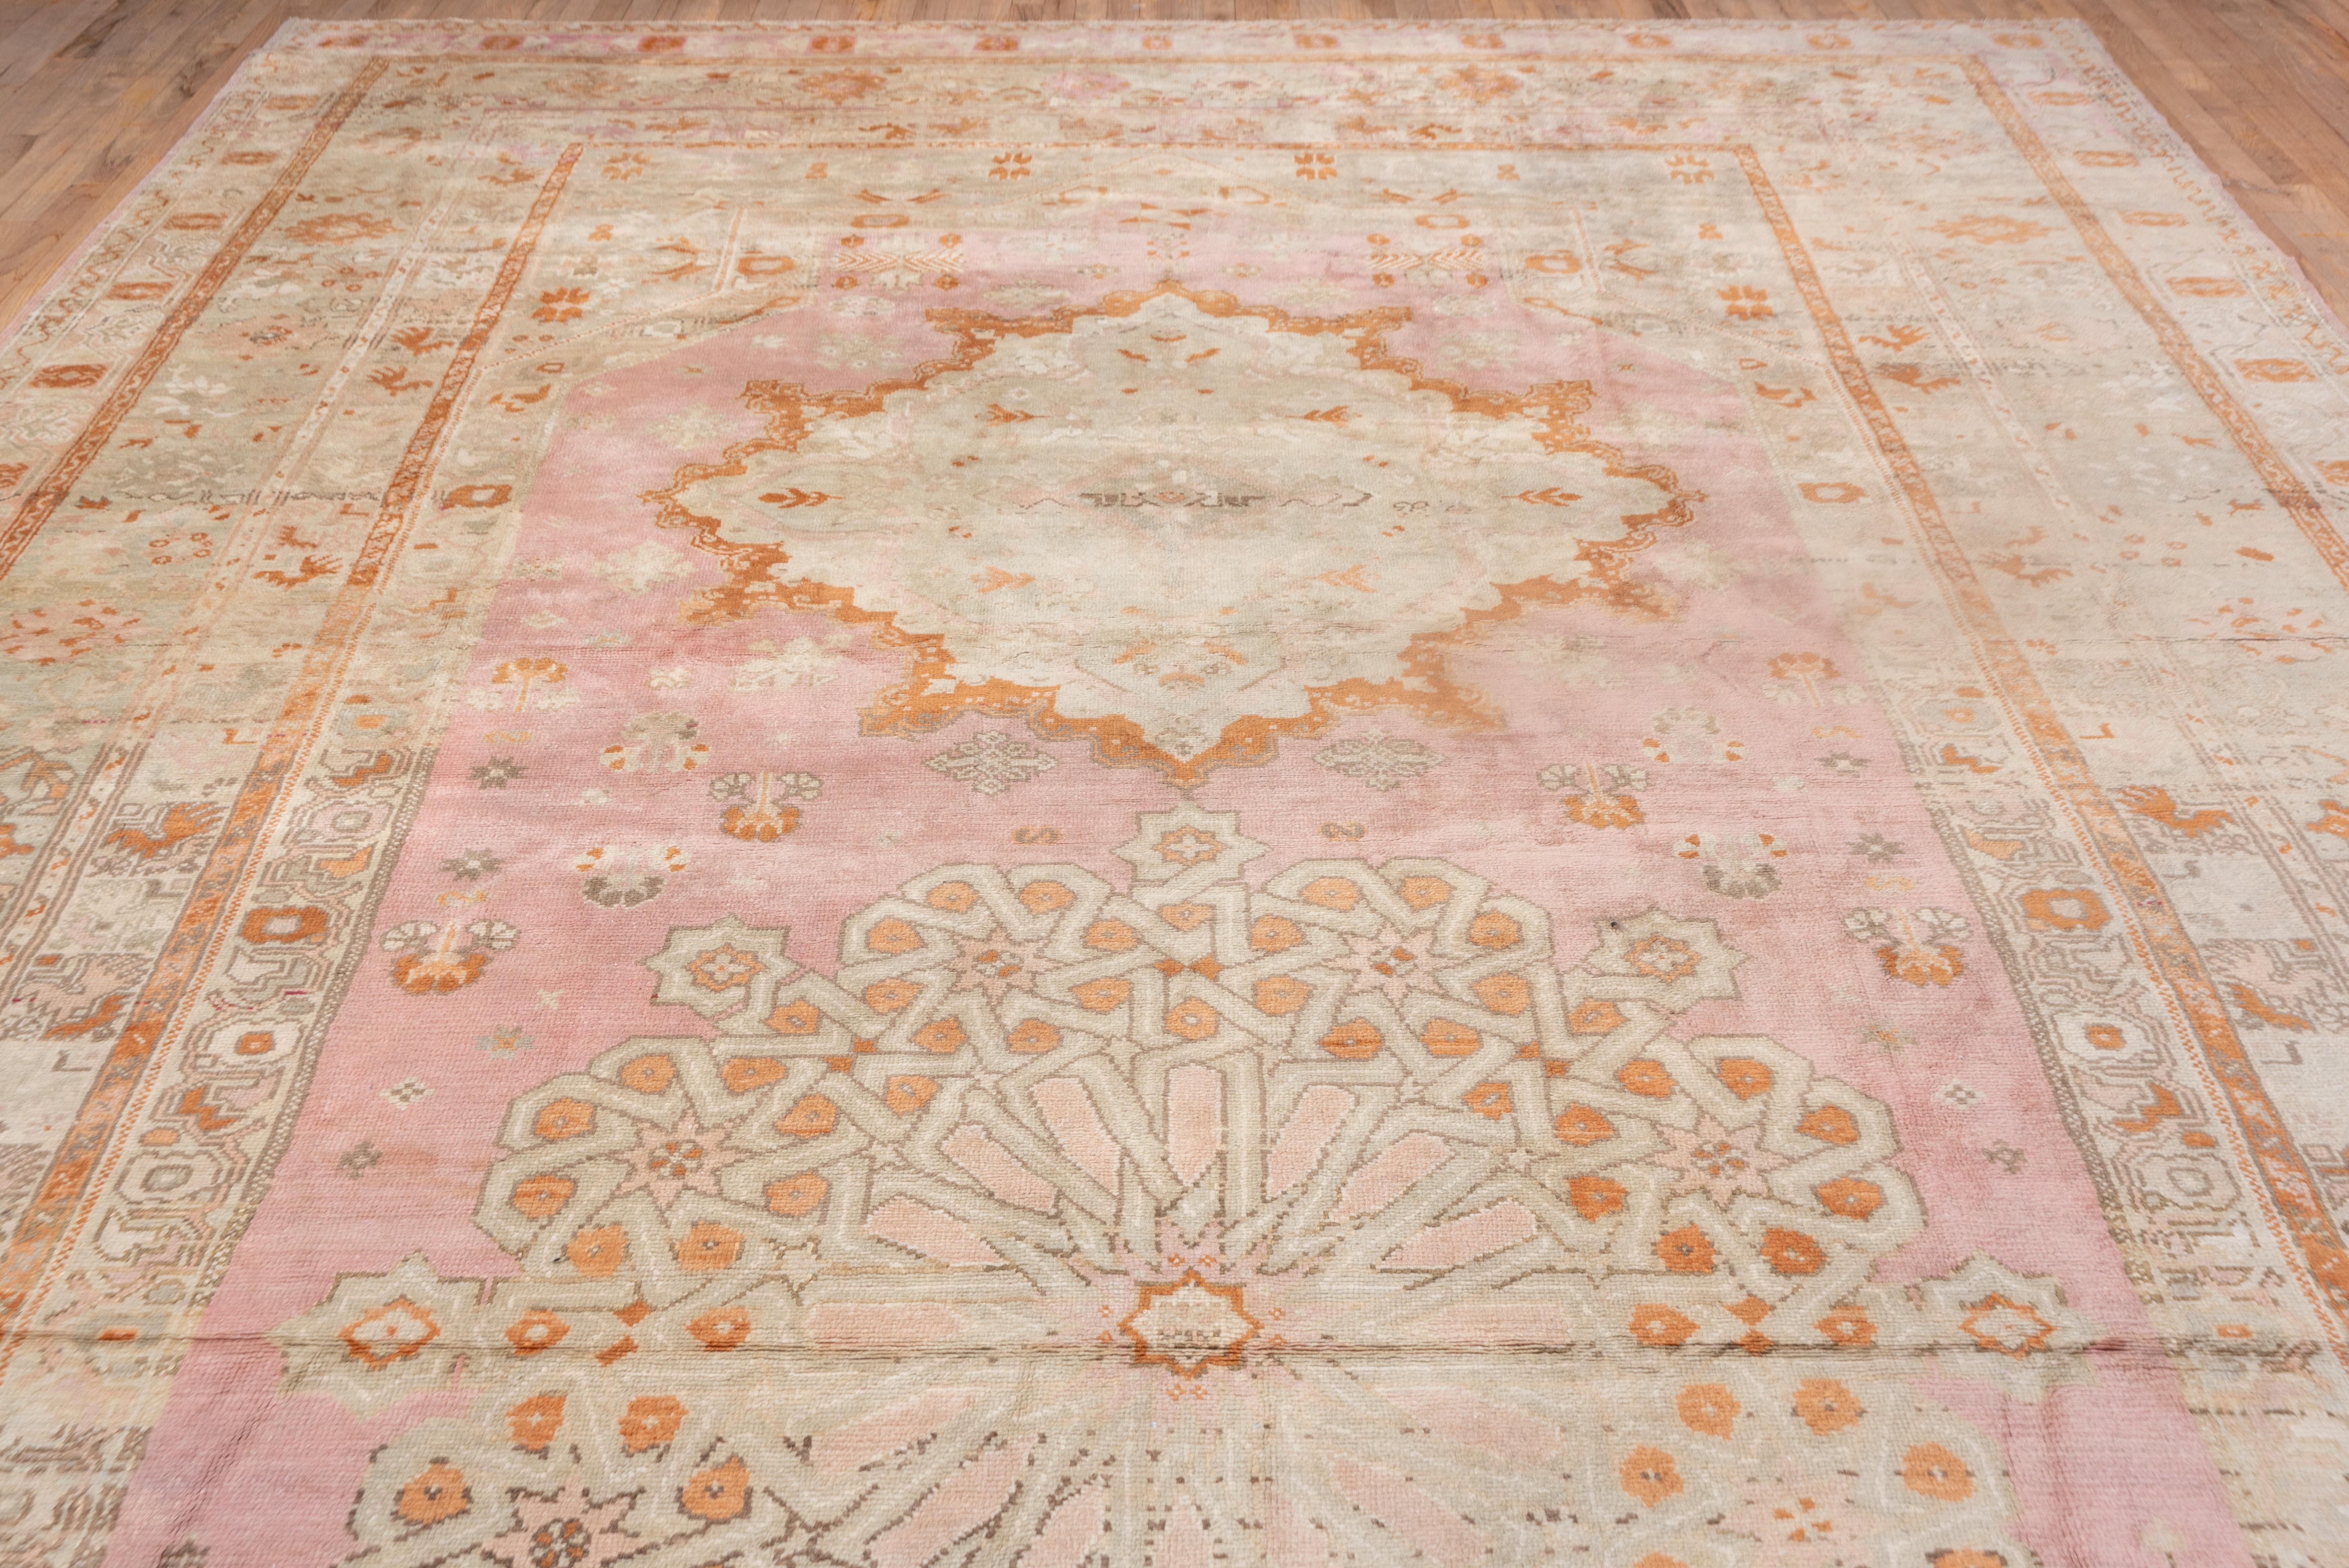 Hand-Knotted Massive Antique Turkish Oushak Mansion Carpet, Pink, Ivory & Orange Tones For Sale